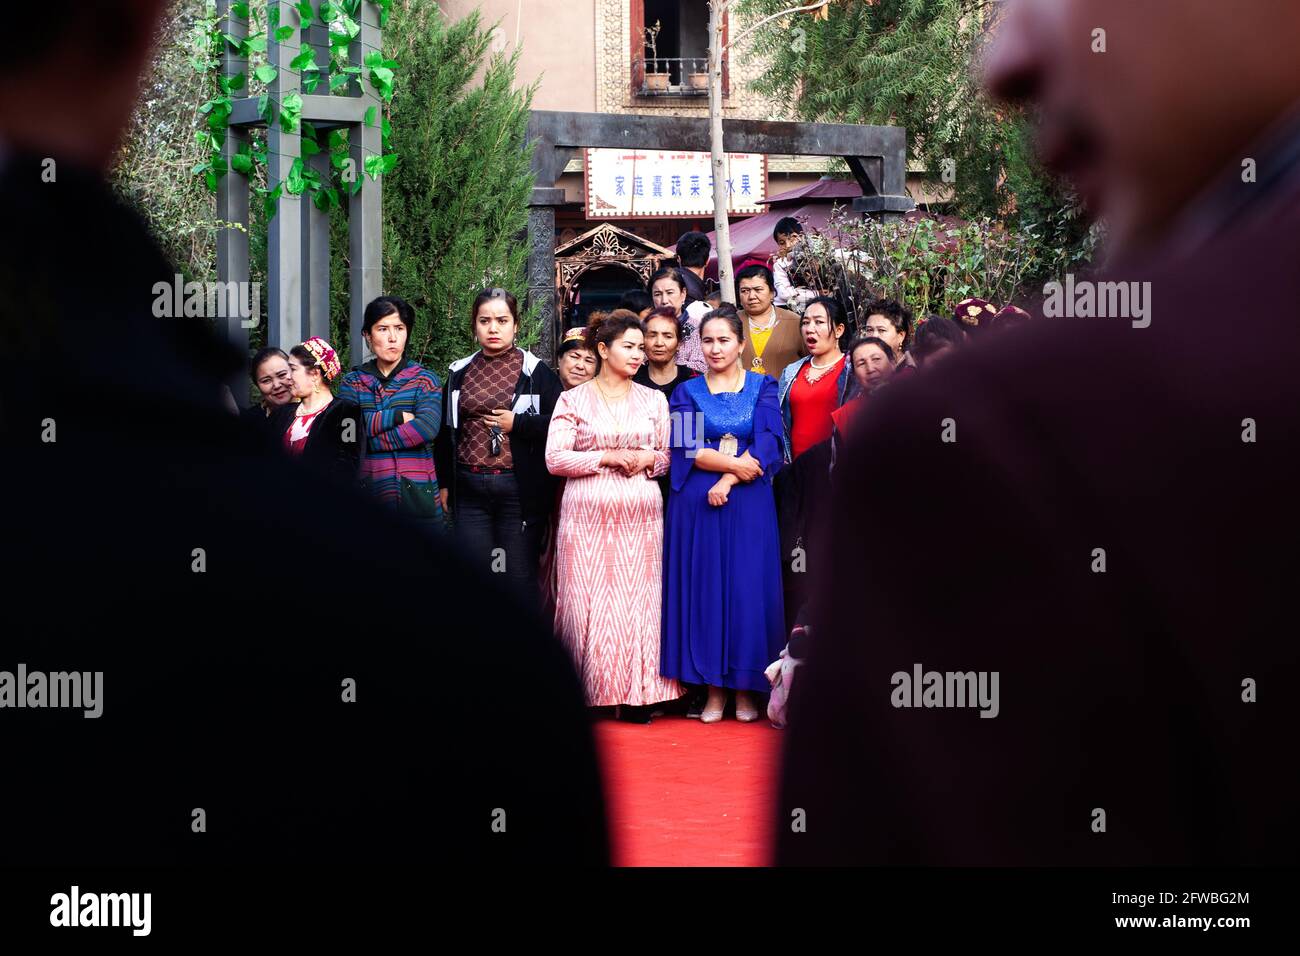 89 / 5000 in der Silhouette zweier Männer sehen wir eine Gruppe von Frauen der uigurischen Volksgruppe, die zu einer Feier gekleidet sind Kashgar, Xinkiang, P Stockfoto